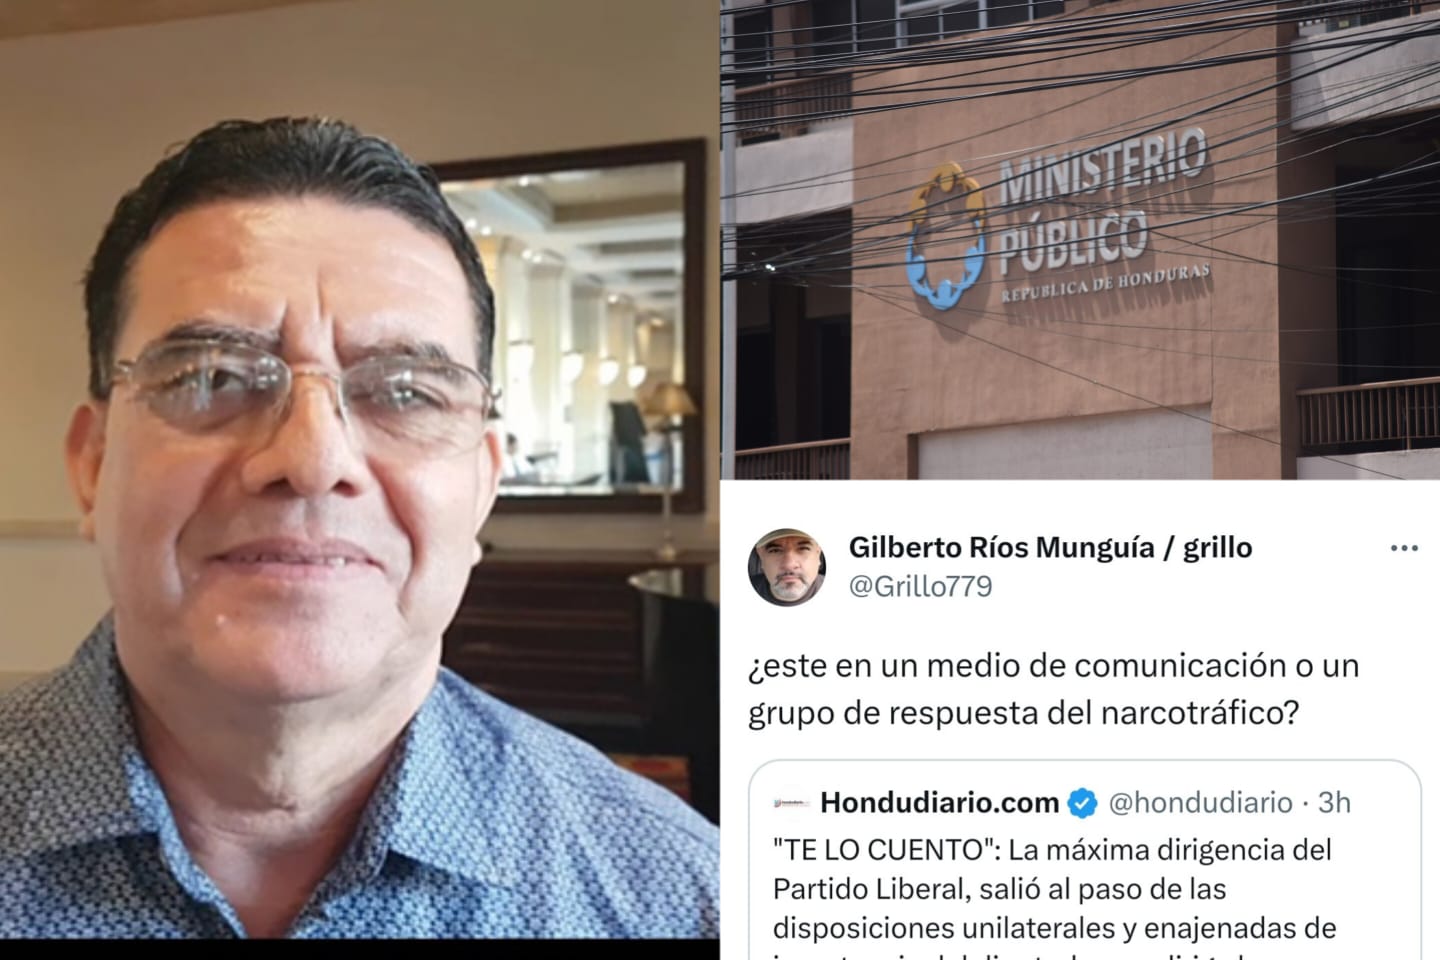 Director de Hondudiario interpondrá denuncia ante el MP por ataques del Gobierno